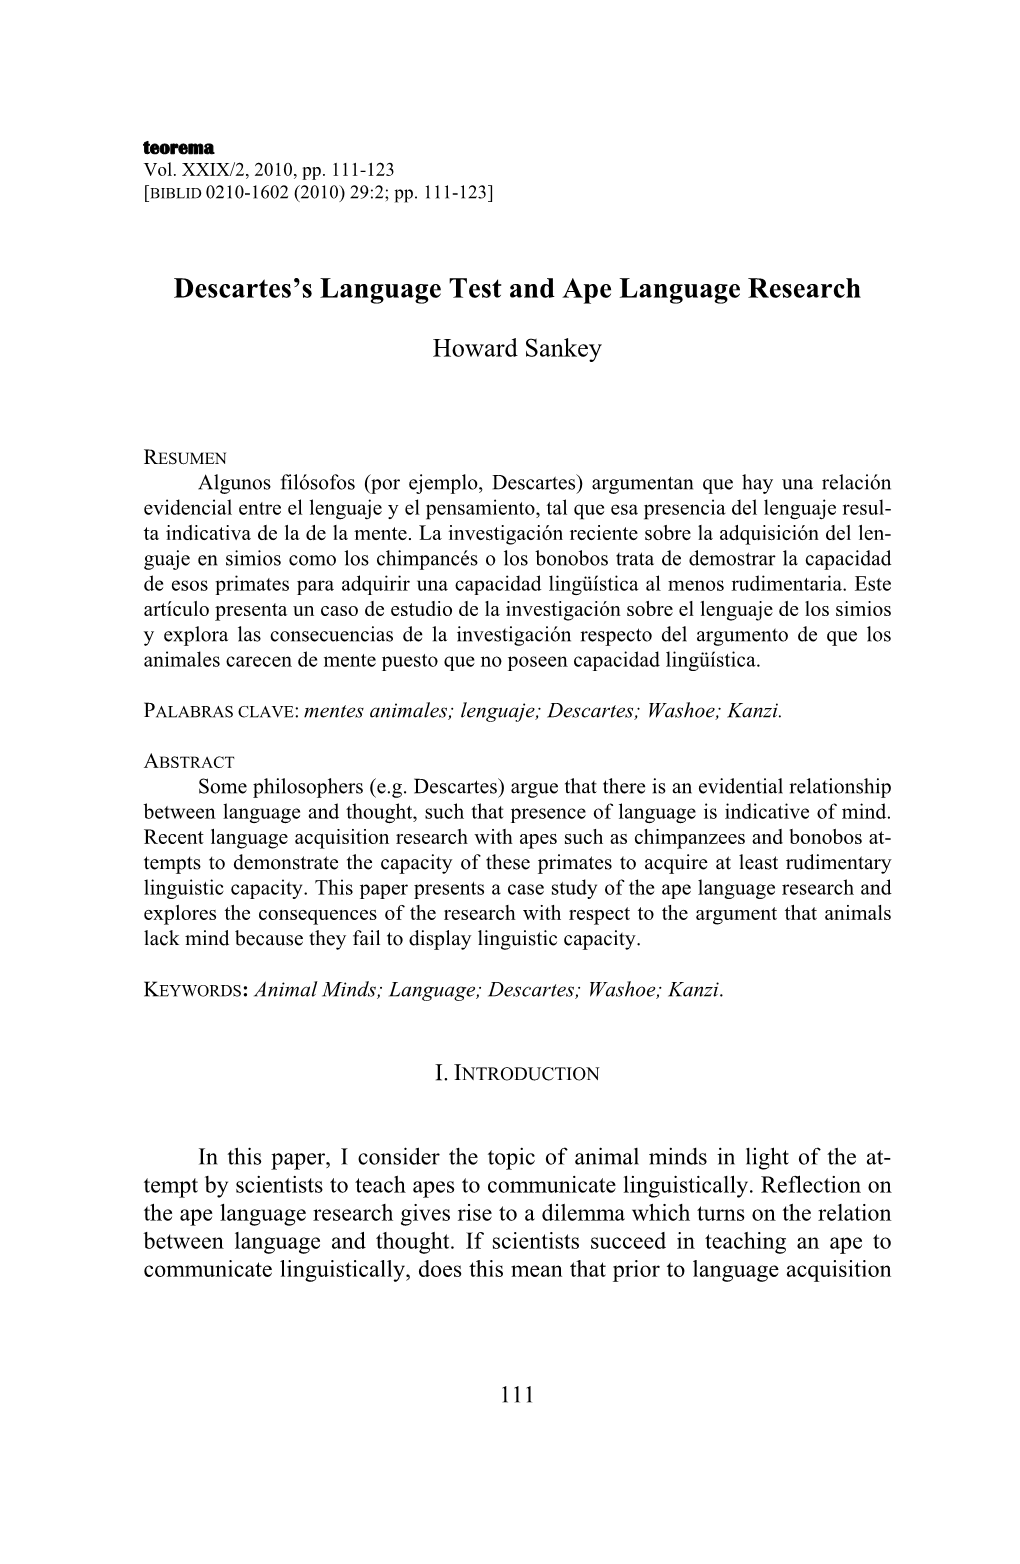 Descartes's Language Test and Ape Language Research